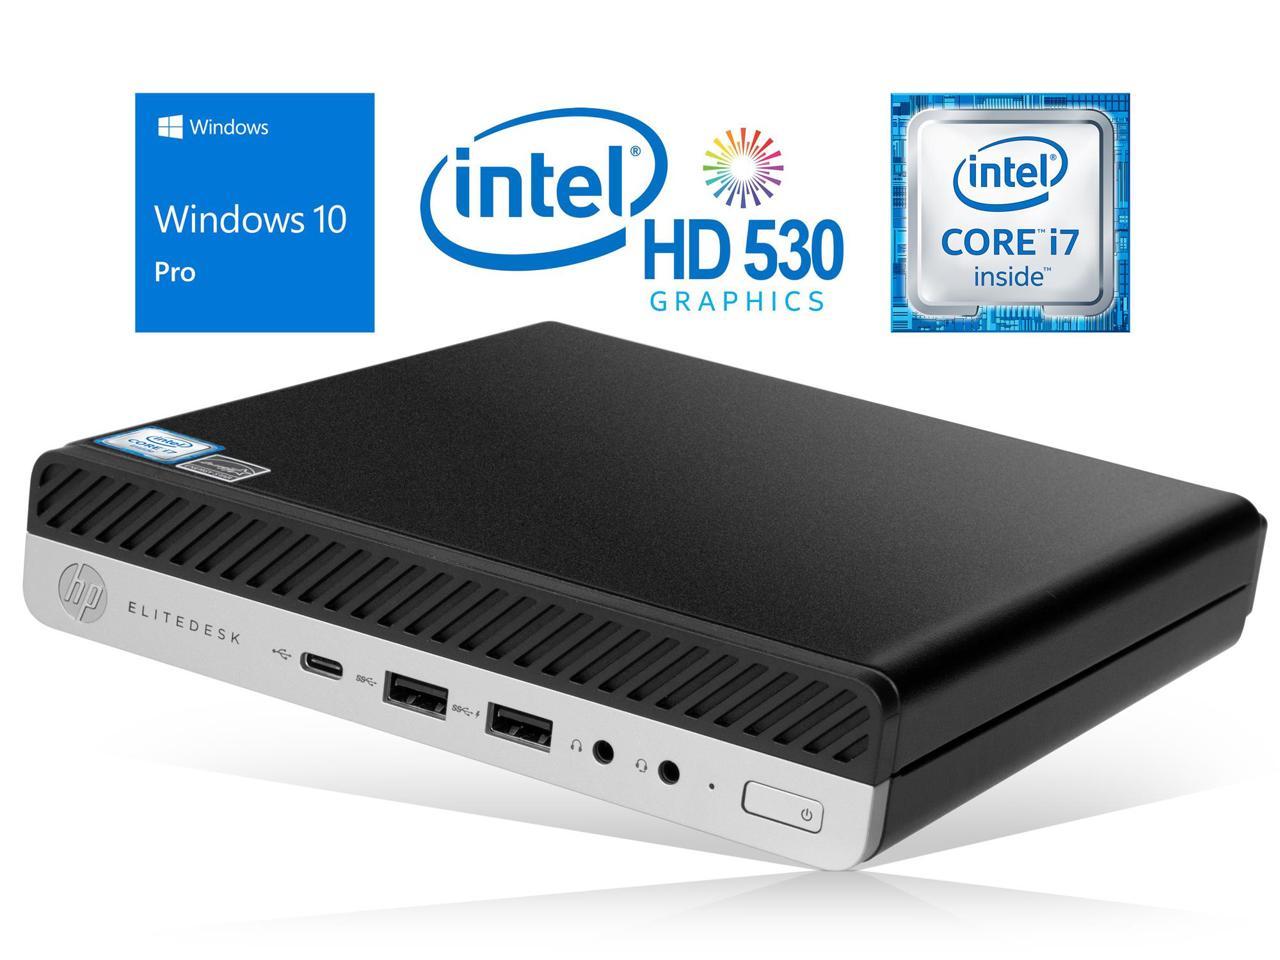 HP EliteDesk 800 G3 Mini PC, Intel Core i7-6700 Upto 4.0GHz, 32GB RAM, 512GB SSD, DisplayPort, Wi-Fi, Bluetooth, Windows 10 Pro